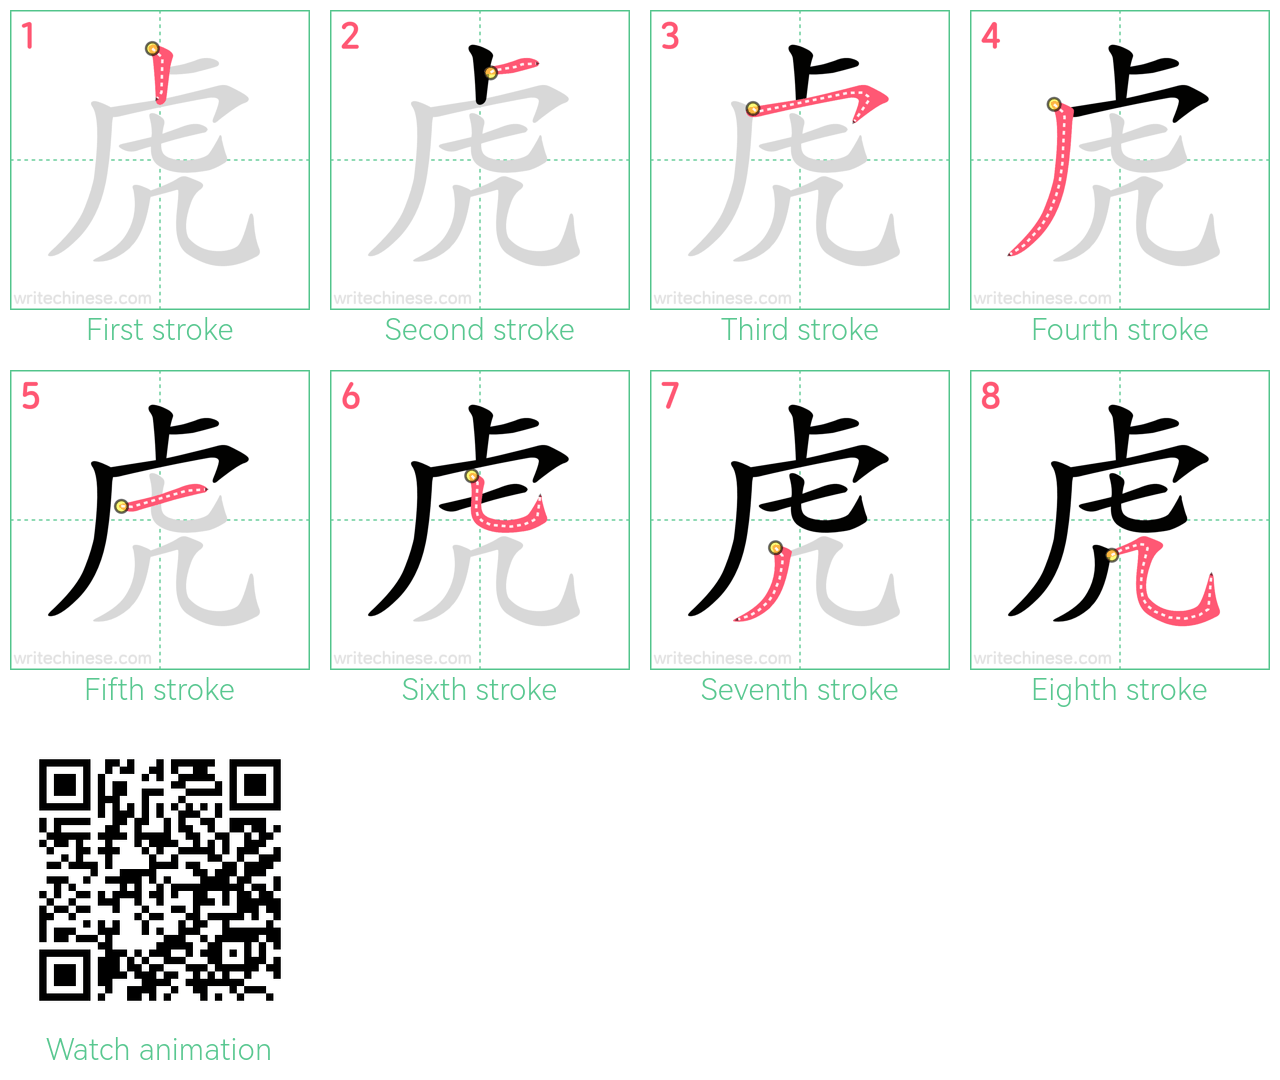 虎 step-by-step stroke order diagrams